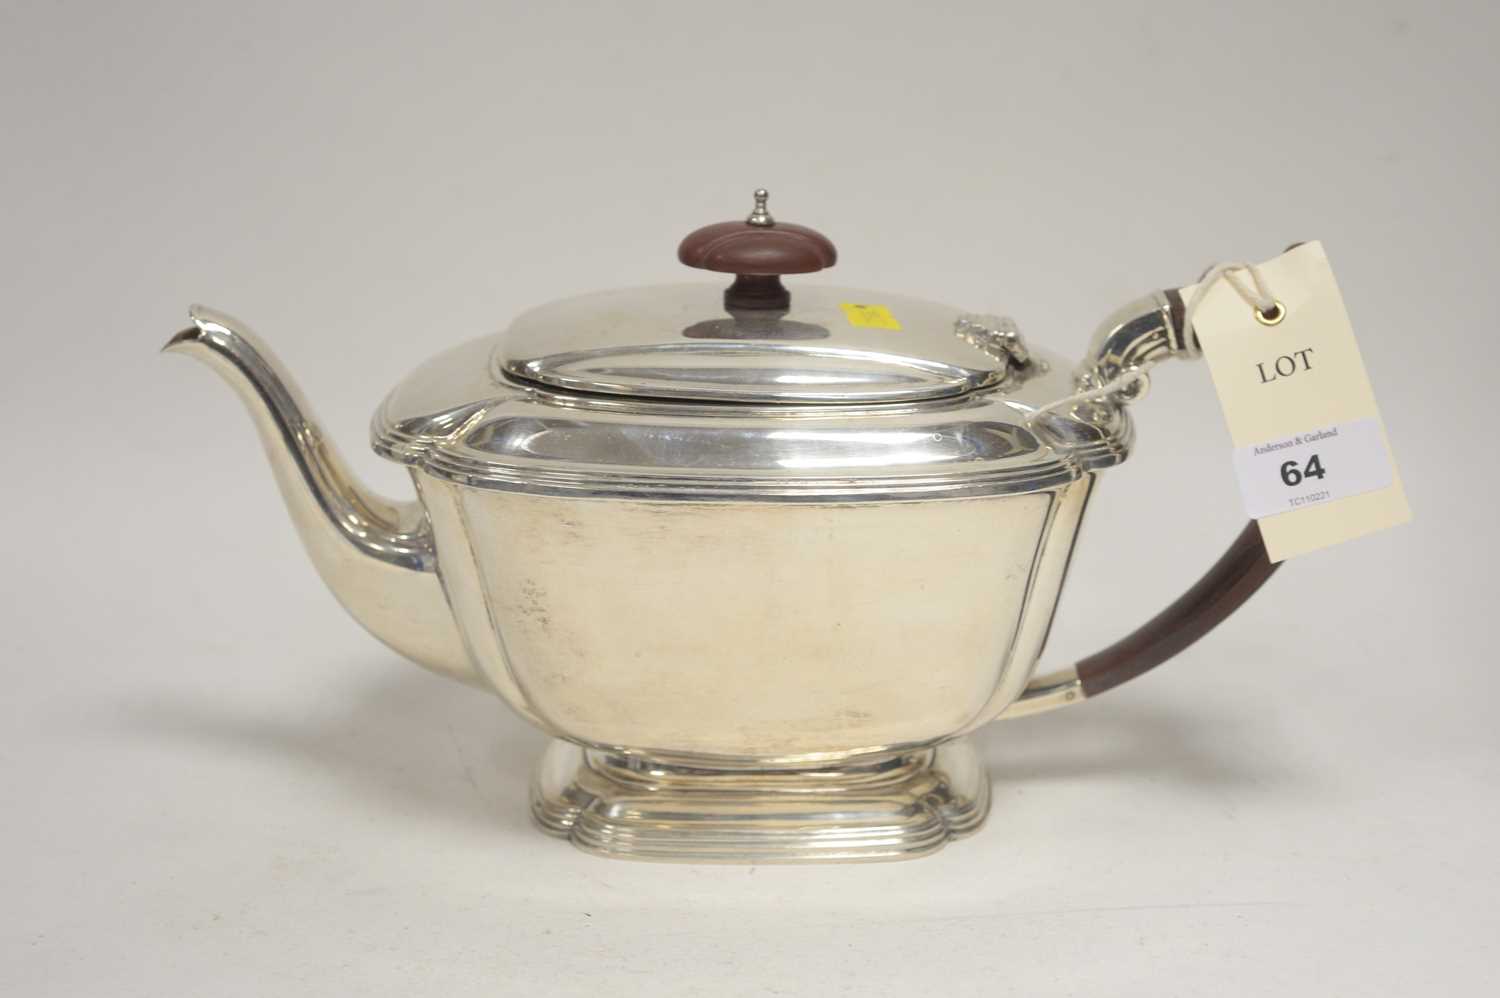 Lot 64 - A silver teapot.